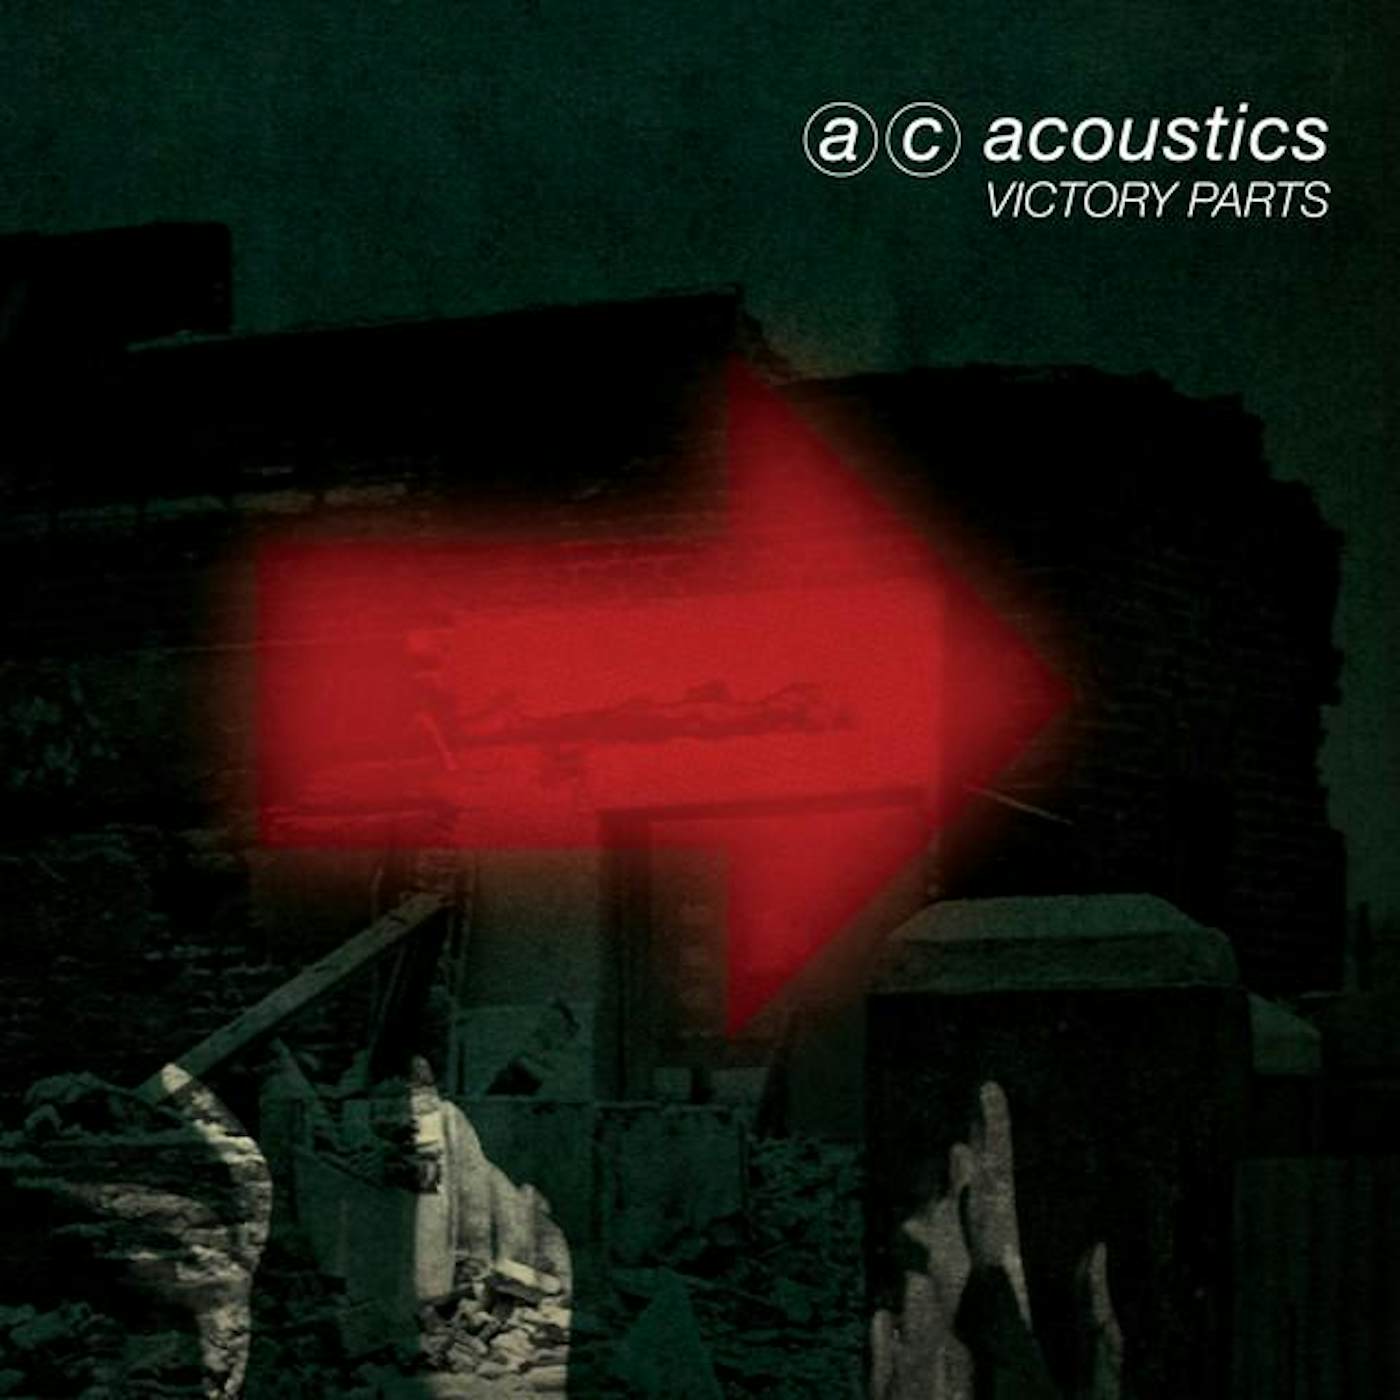 ac acoustics